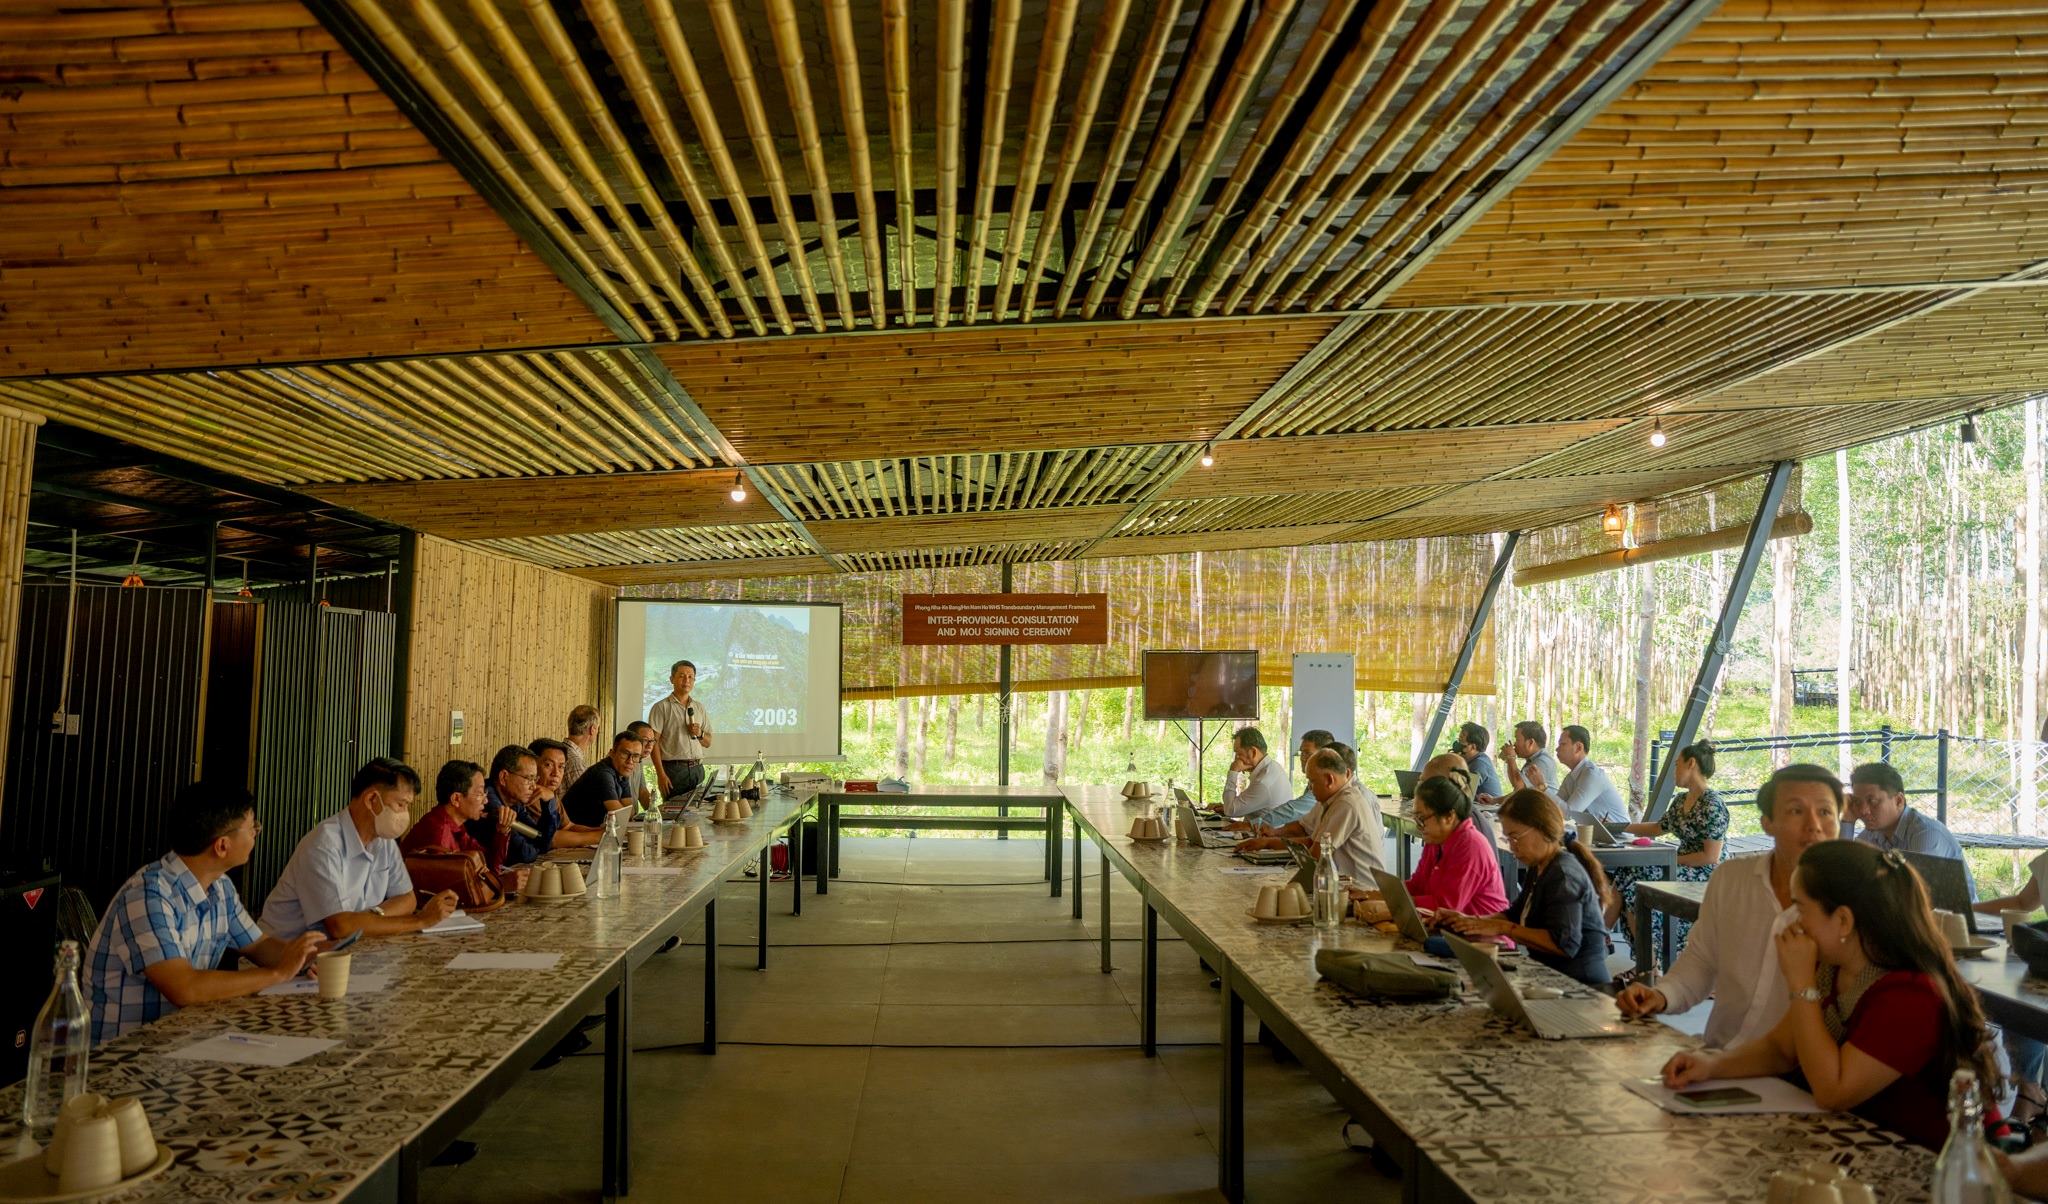 Hội nghị “Tham vấn liên tỉnh giữa VQG Phong Nha – Kẻ Bàng và Hin Nam No” do IUCN tổ chức tại Blue Diamond Camp - một trong những sự kiện MICE nổi bật tại Quảng Bình trong thời gian gần đây.